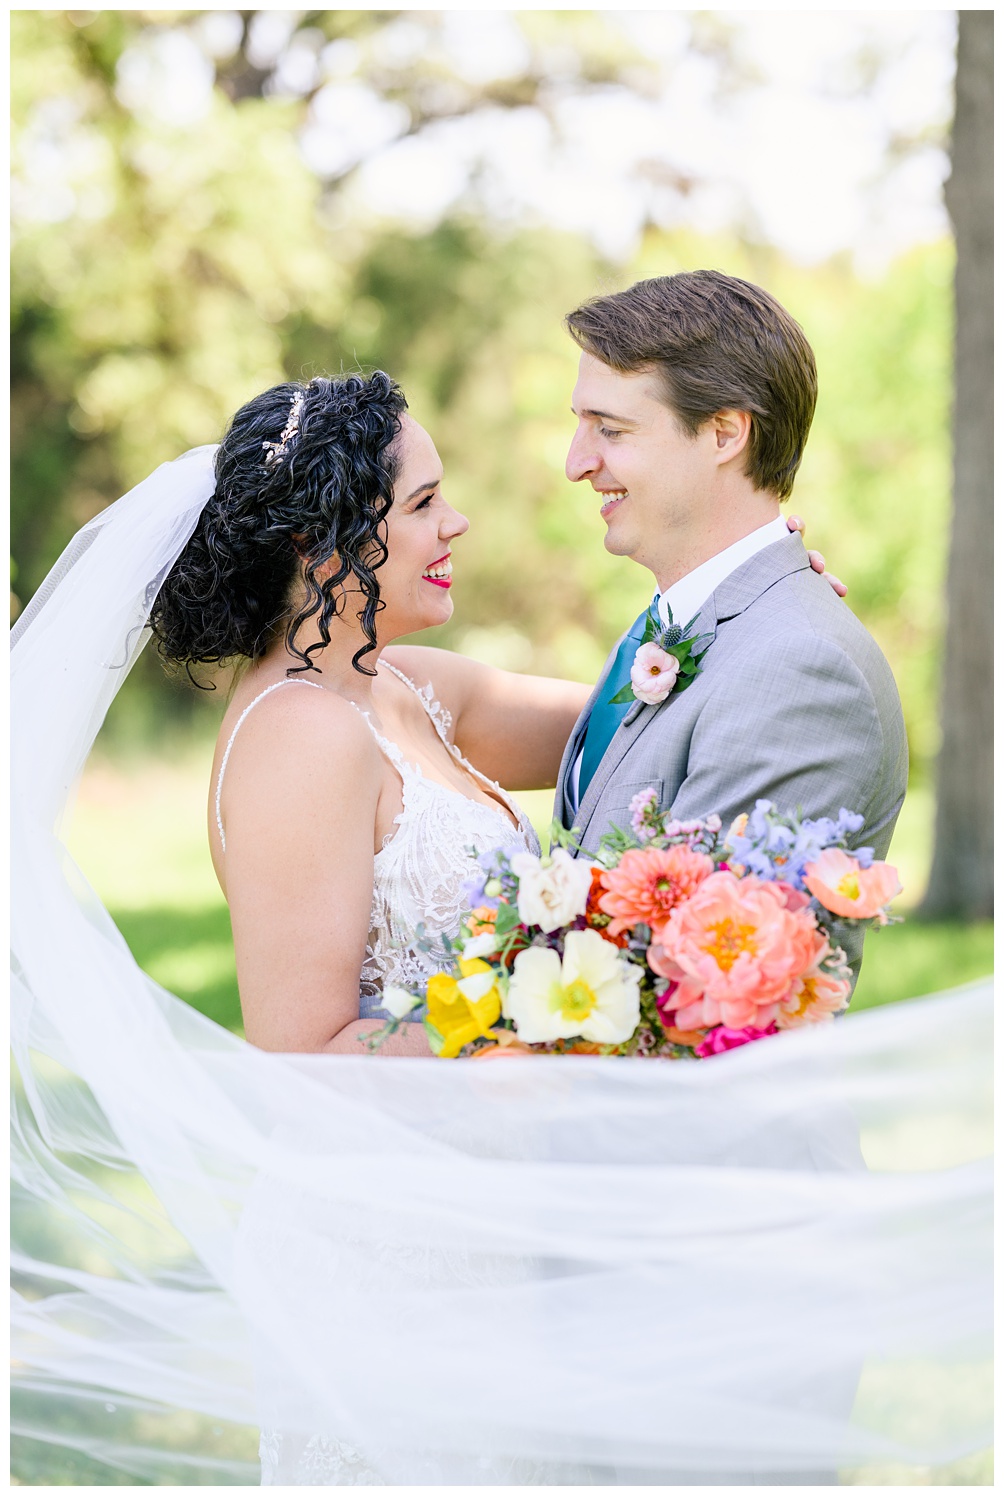 Bride and groom photos at Pecan Springs Ranch wedding venue in Austin Texas